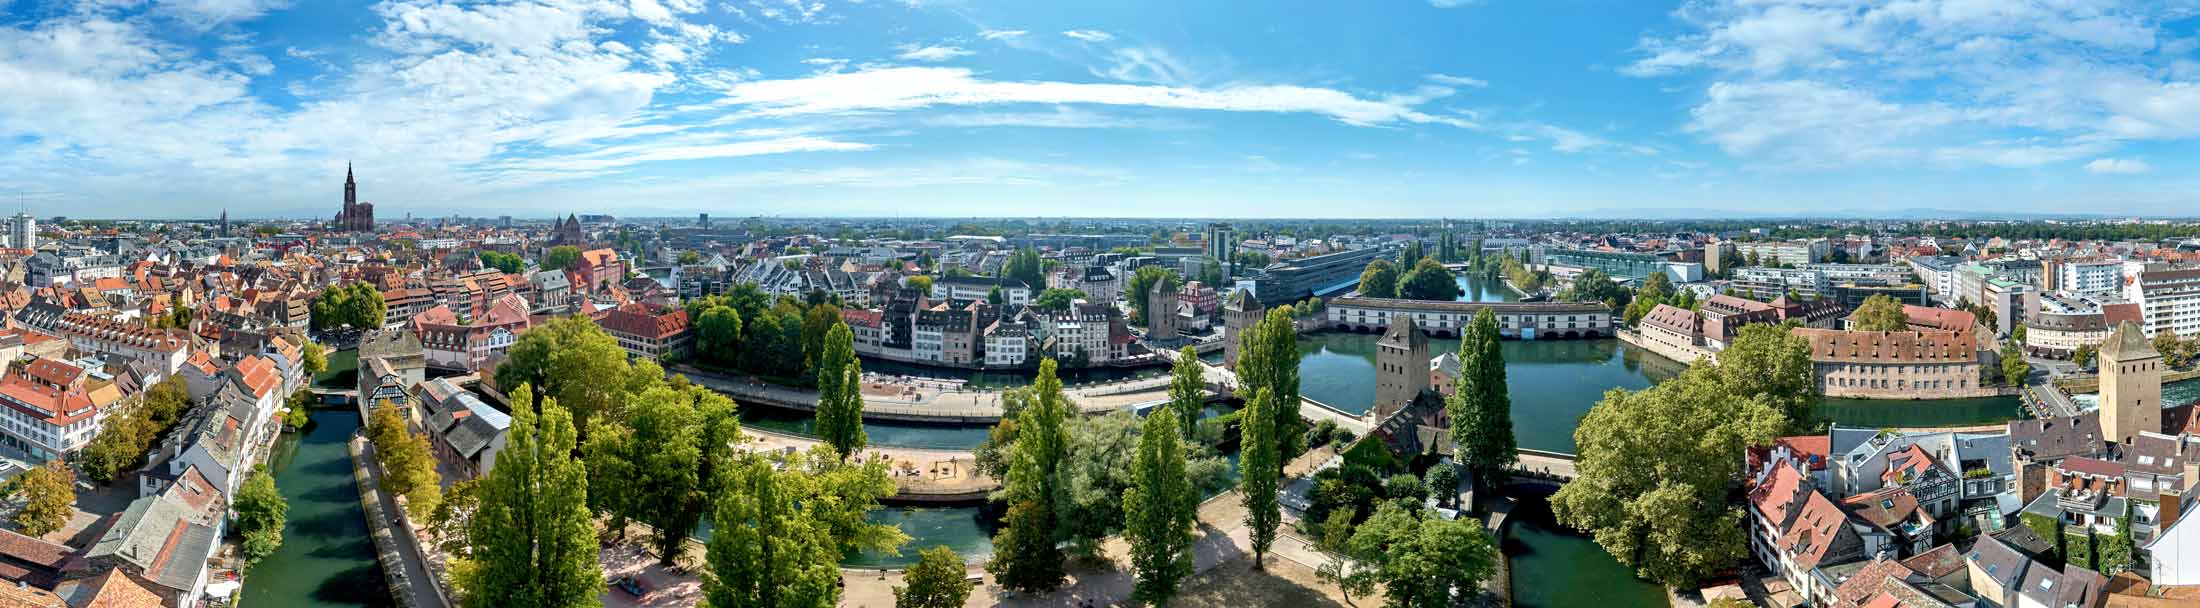 Panoramique réalisé par drone des Ponts Couverts de Strasbourg